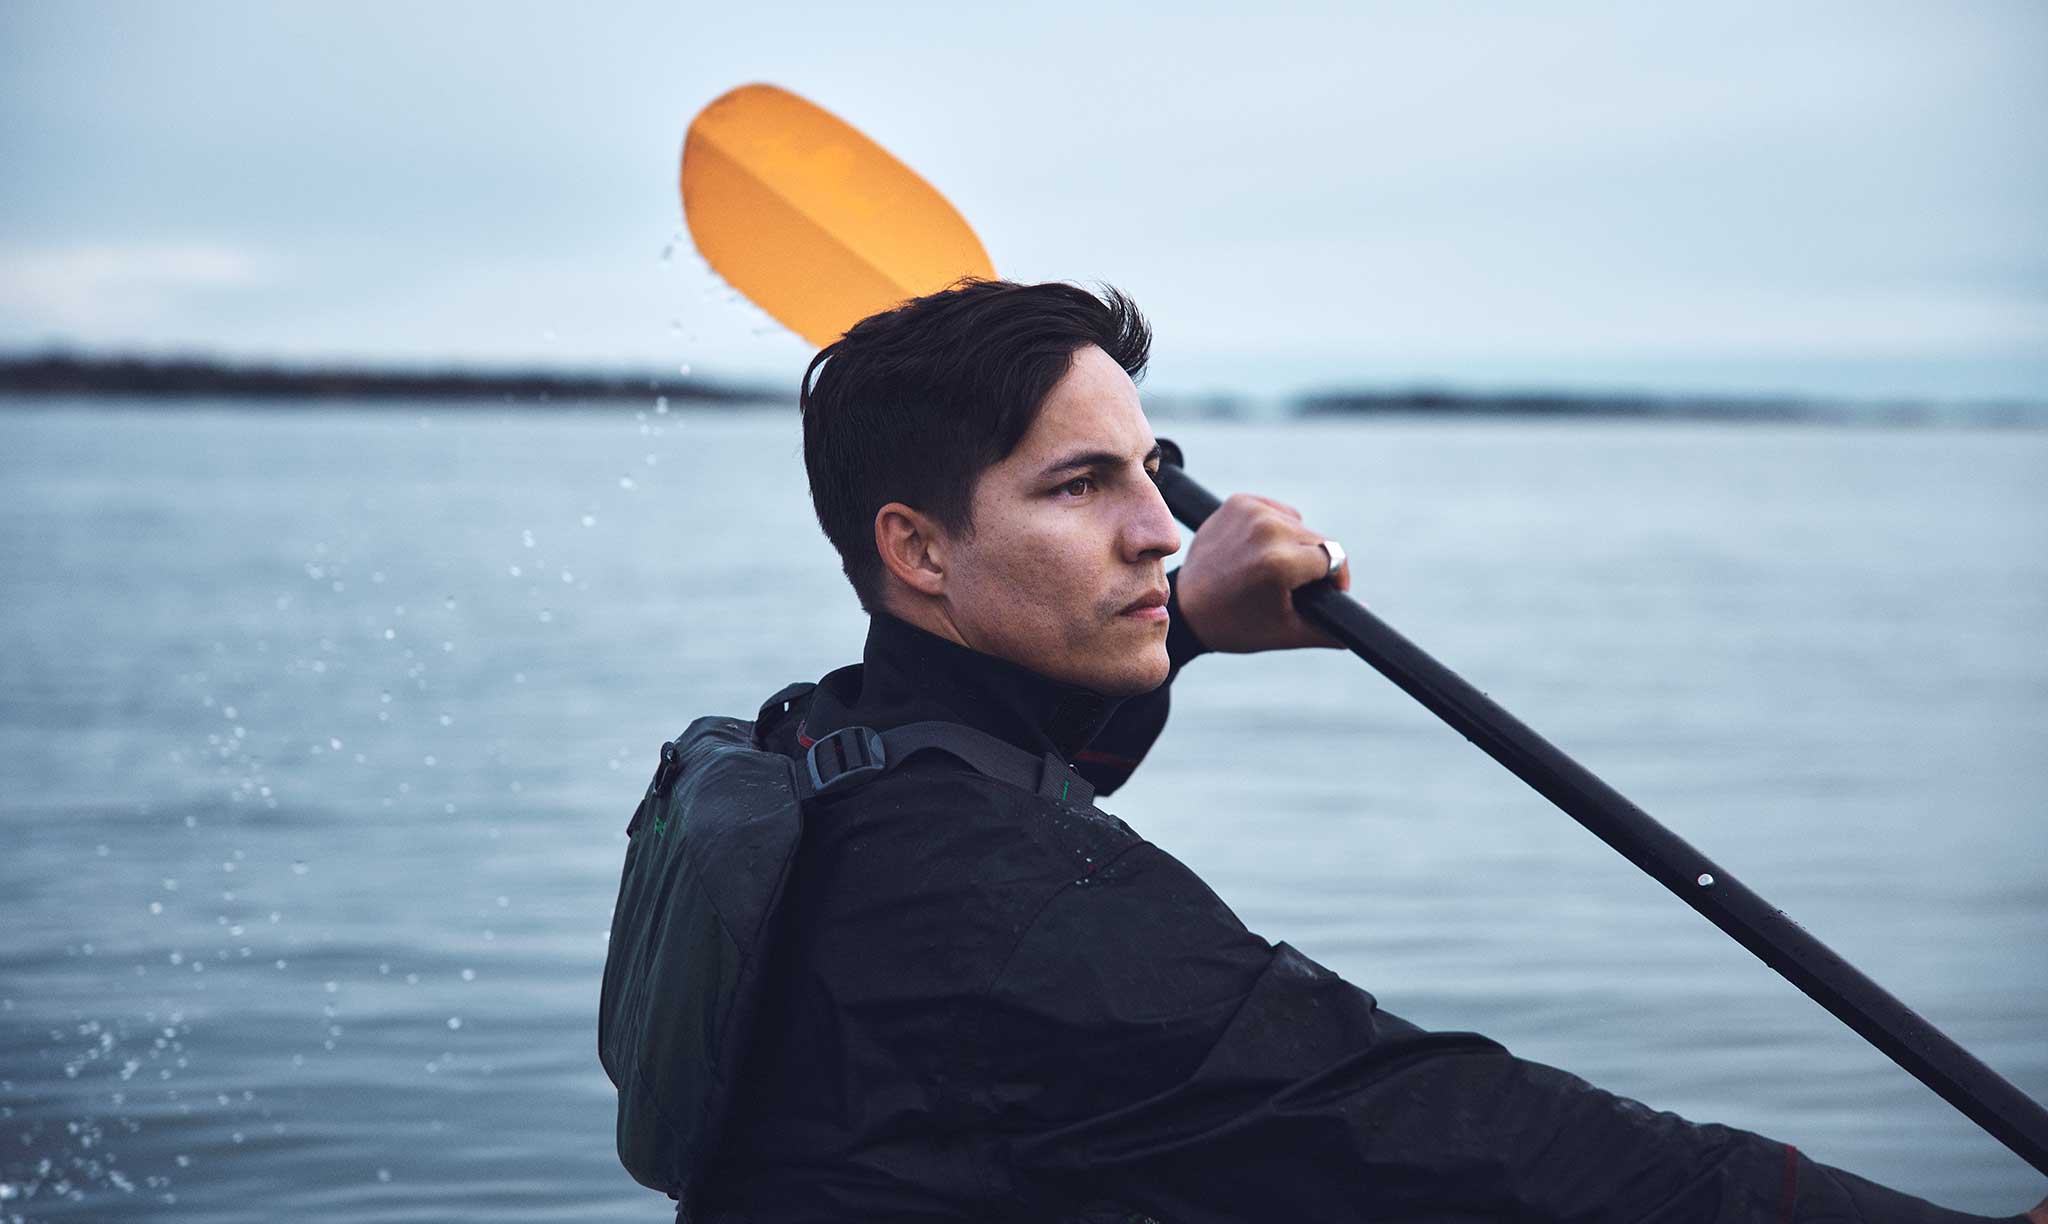 Male paddling a kayak